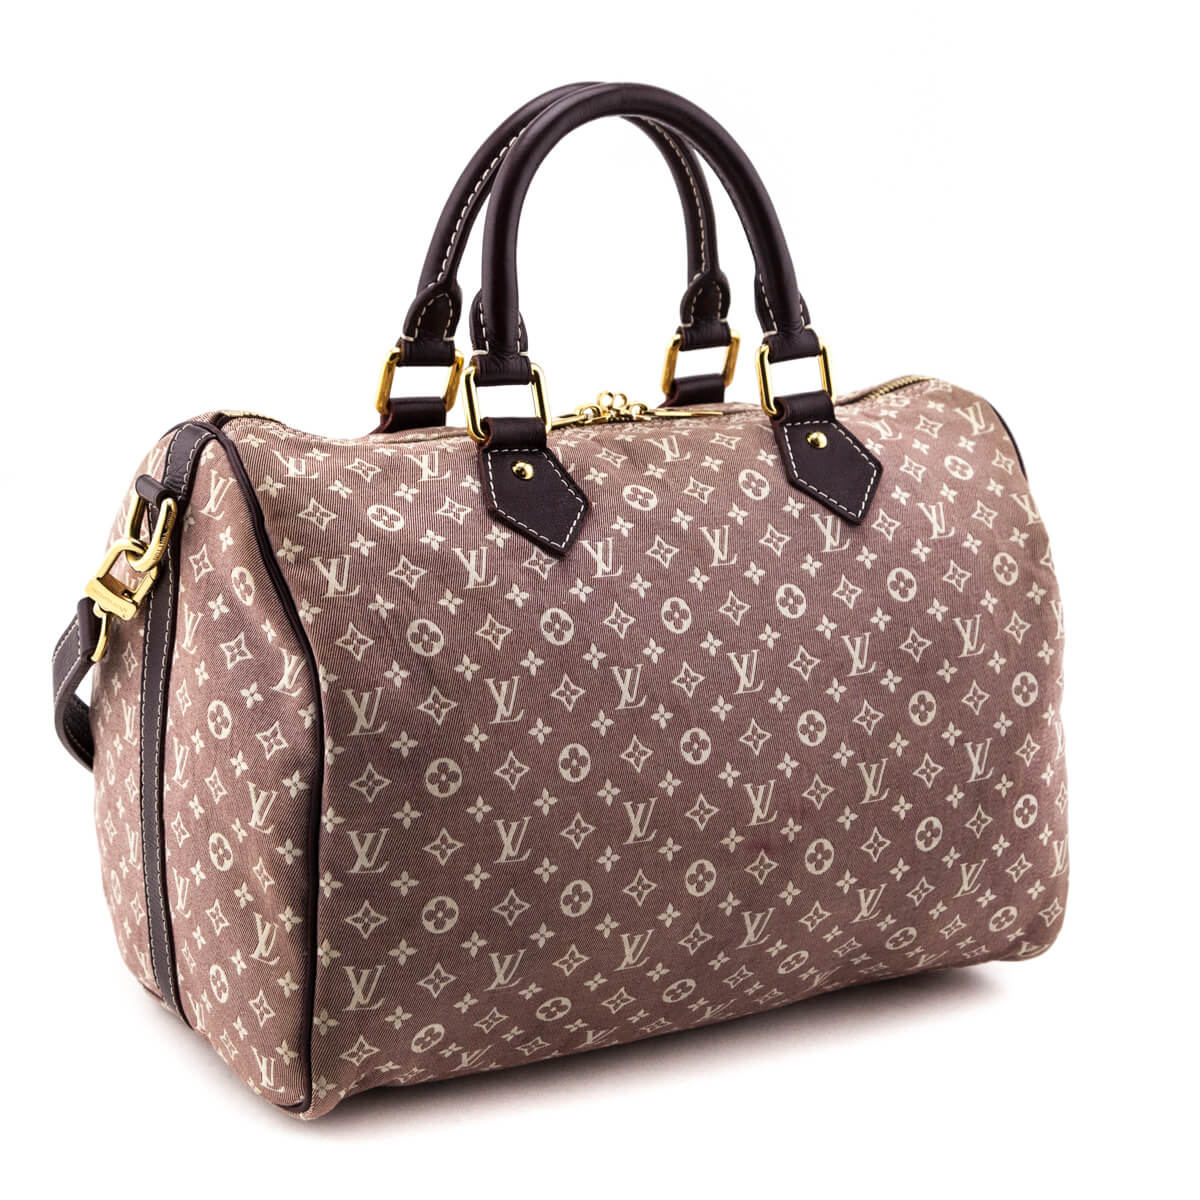 Authentic Louis Vuitton Monogram Idylle Speedy Bandouliere 30 Bag – Paris  Station Shop